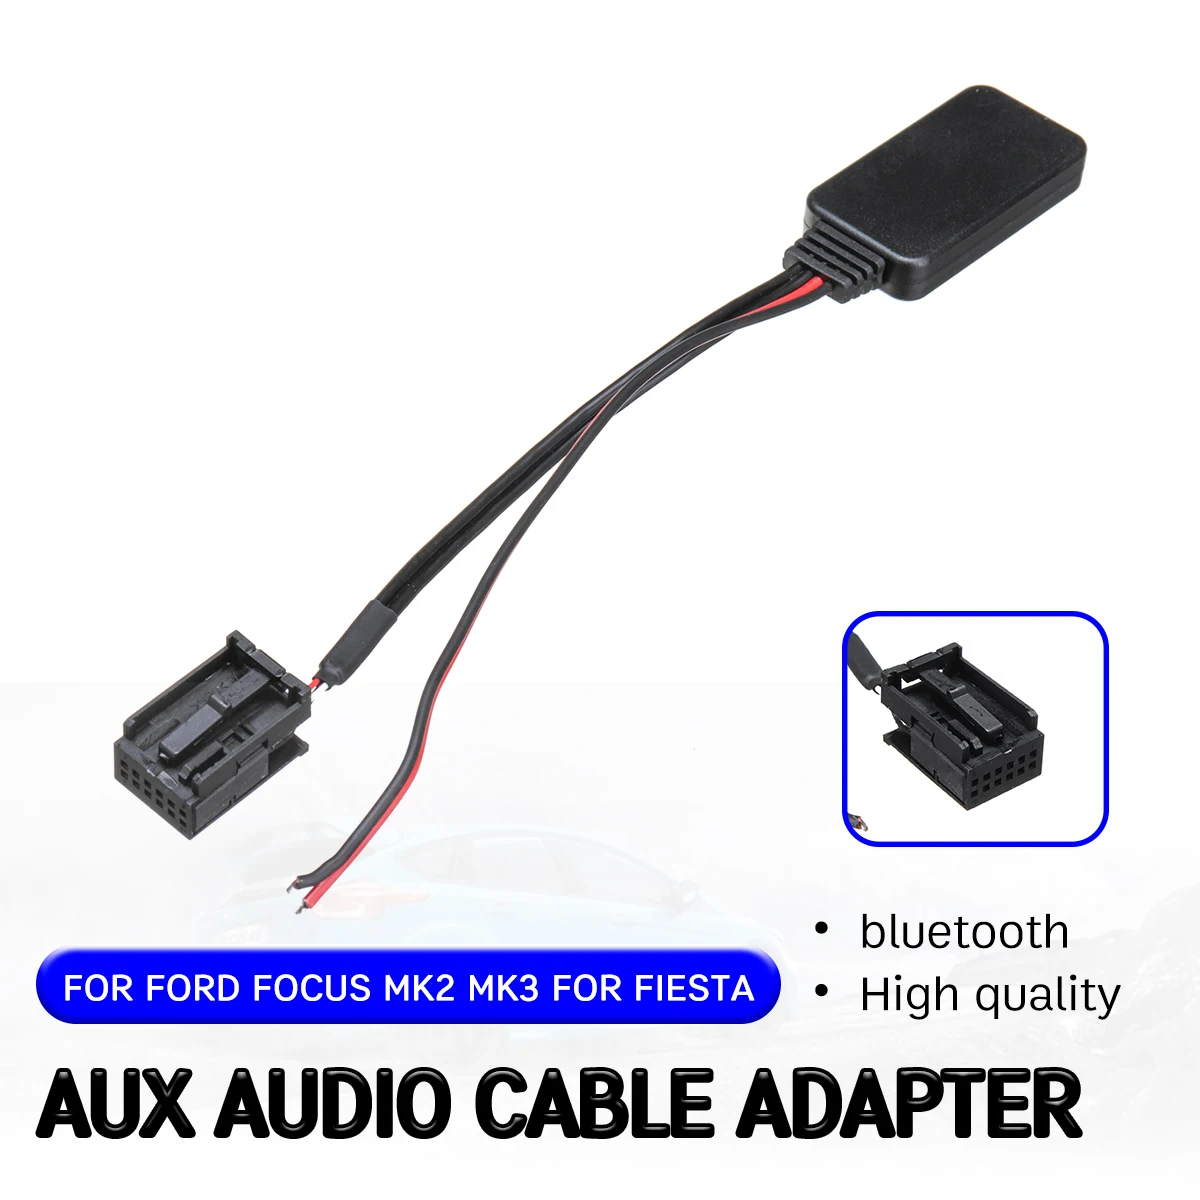 Аудиокабель-адаптер Aux для Ford Focus Mk2 MK3 Fiesta с интерфейсом головного устройства